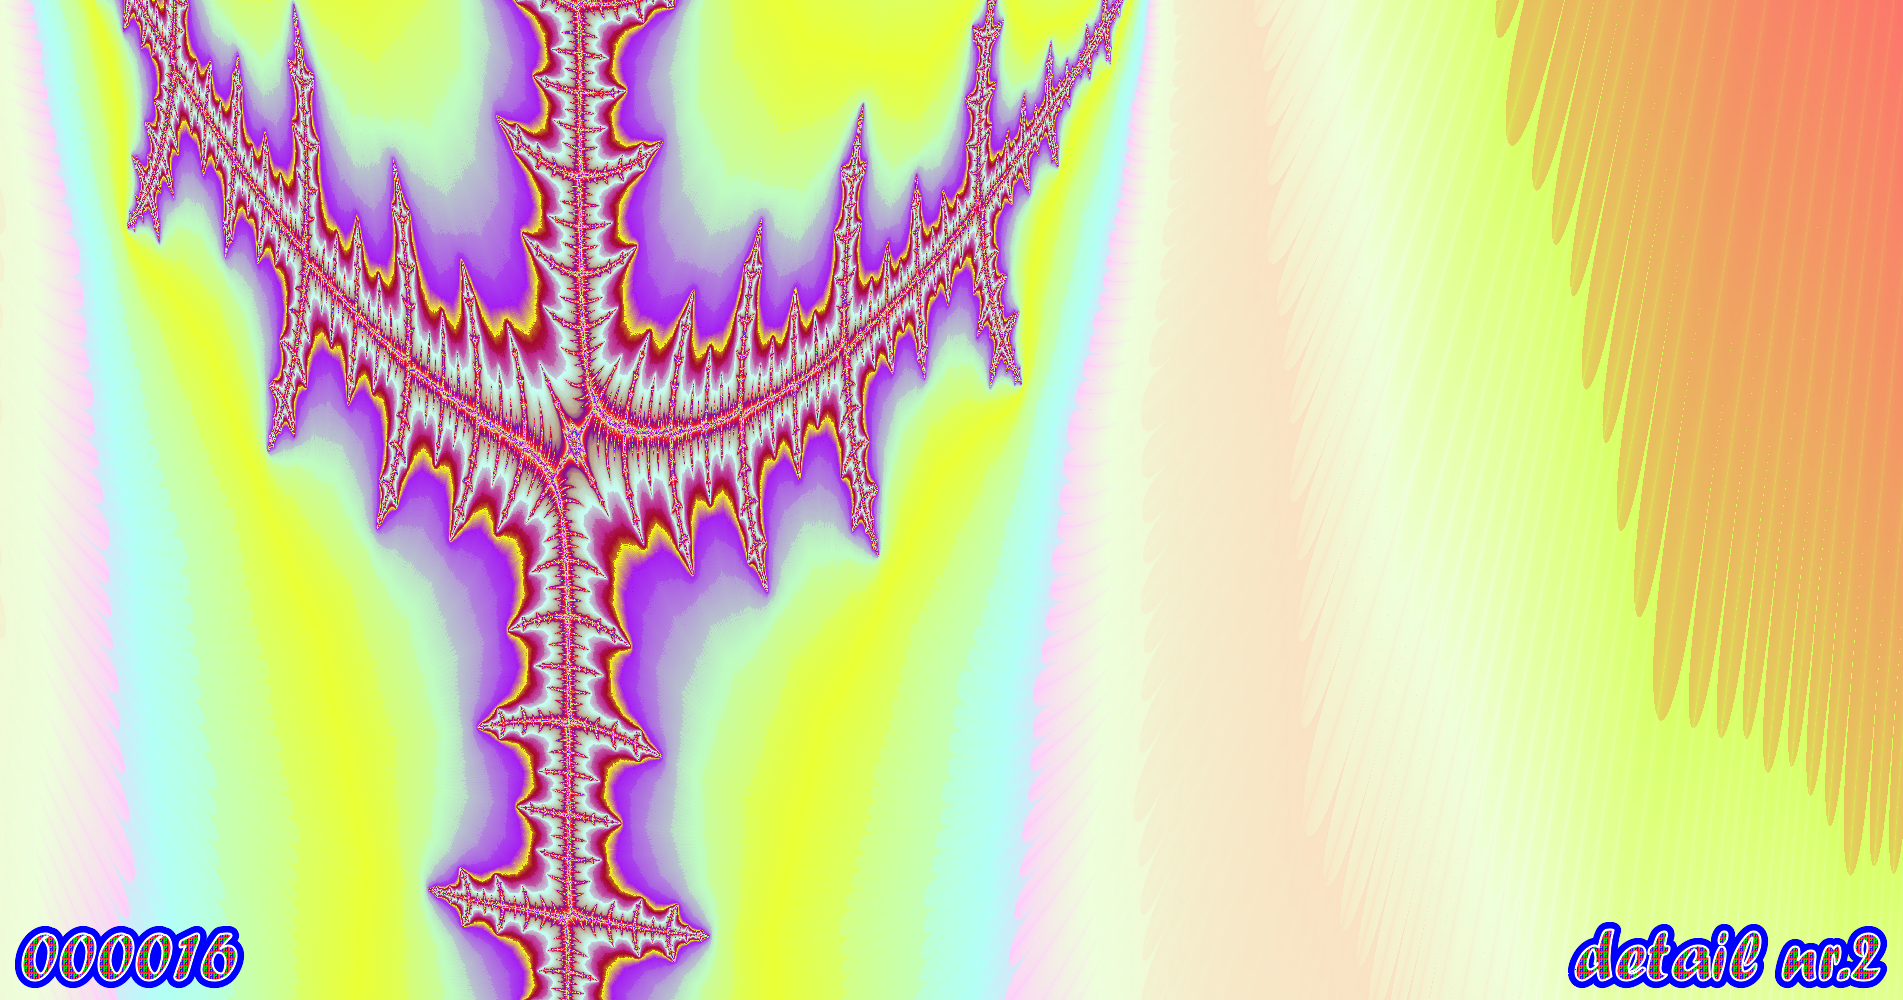 fractal kunst nr. 000016 ,detail nr. 2